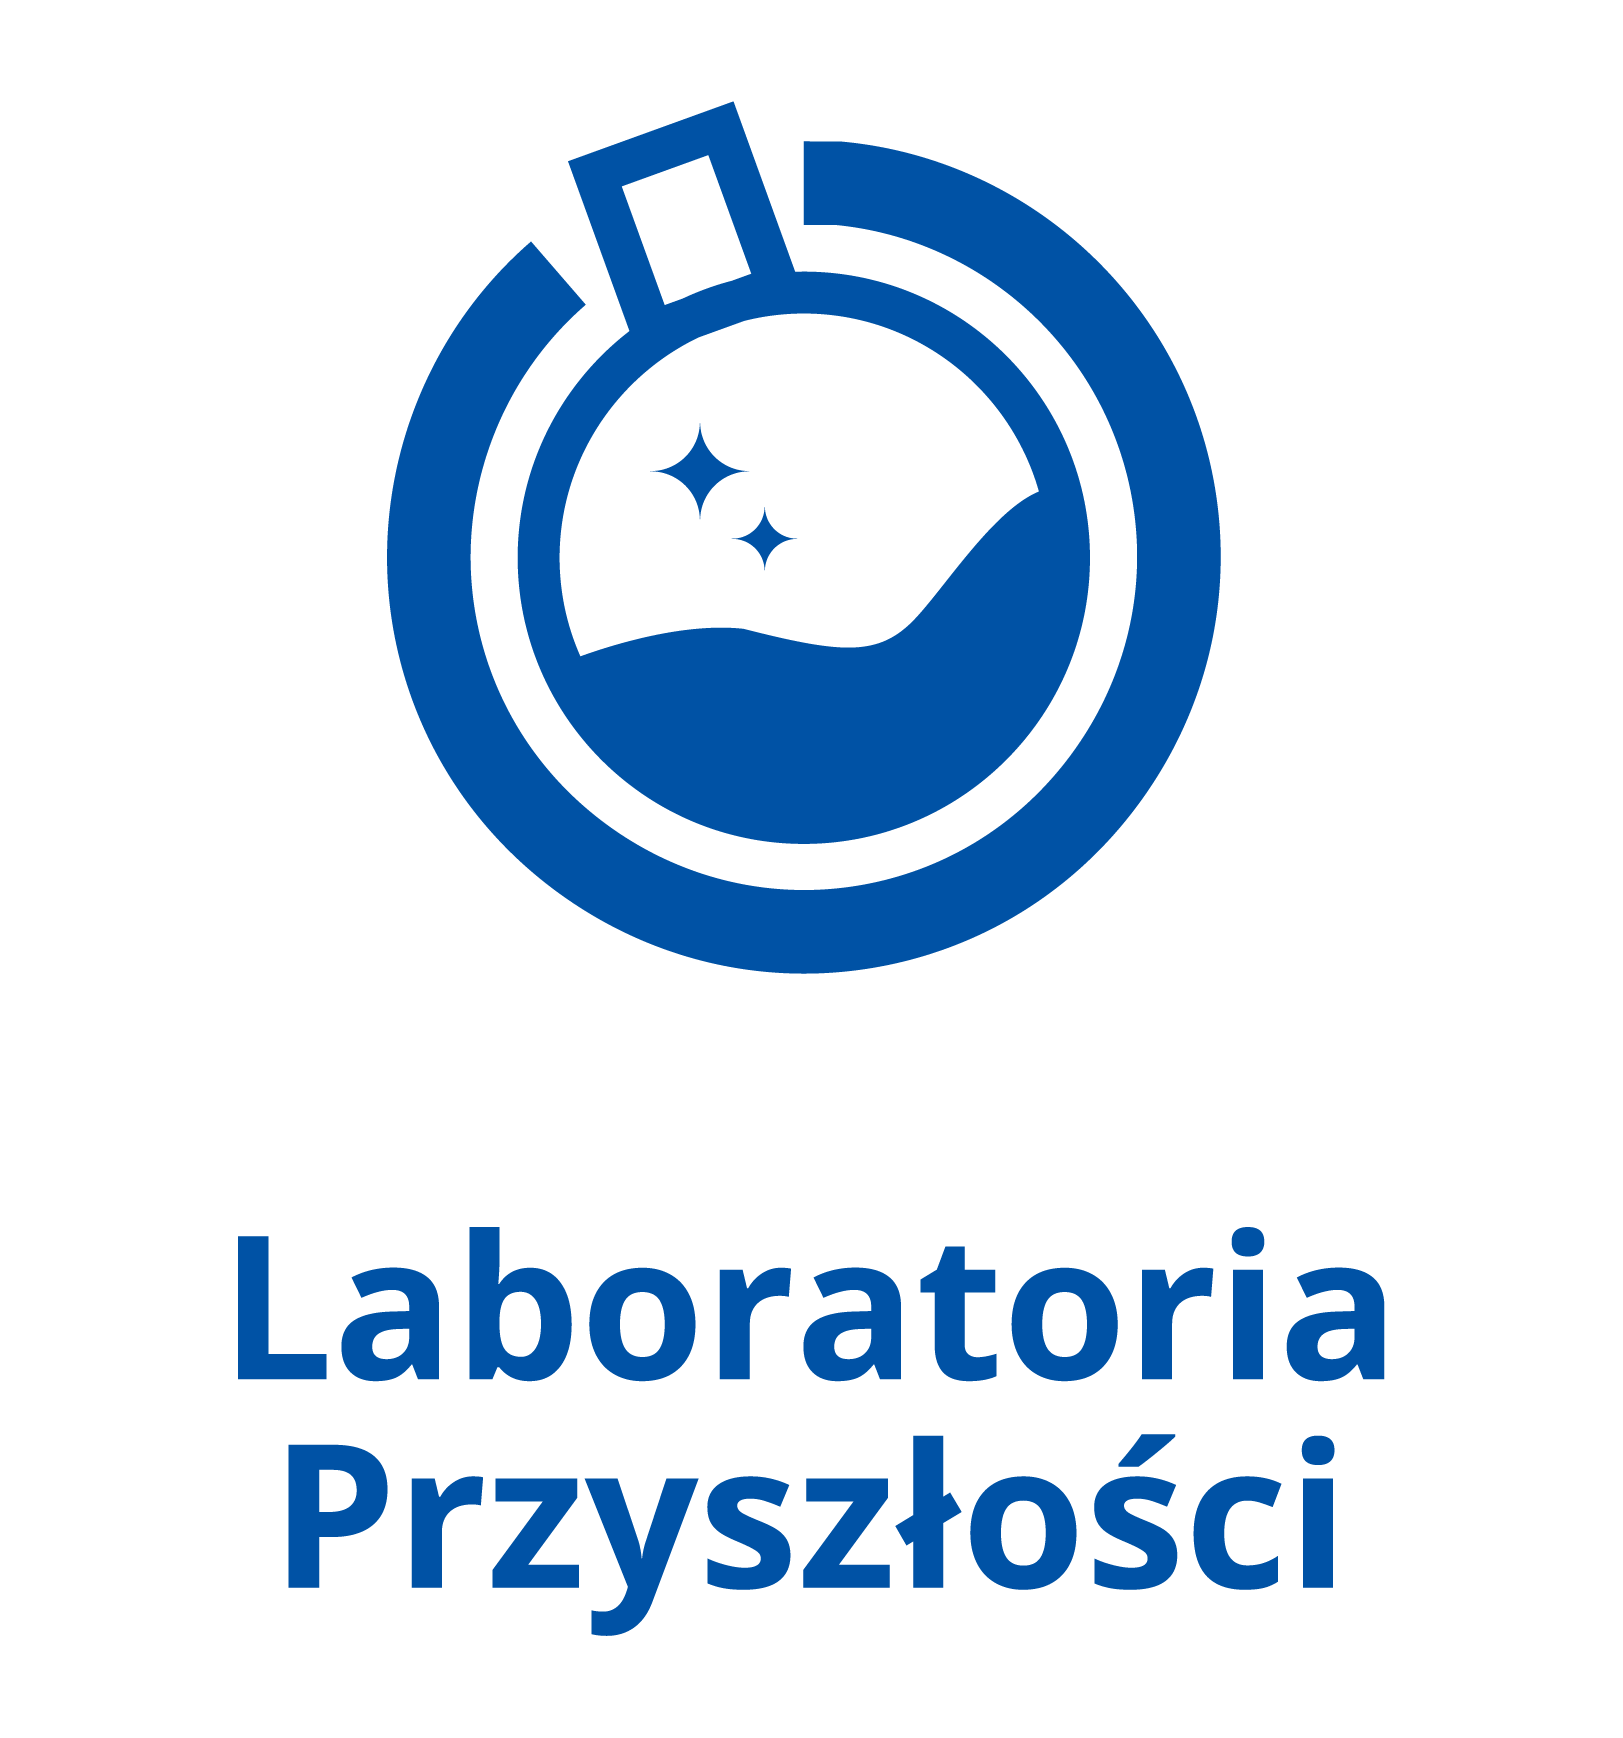 logo_kolor.png